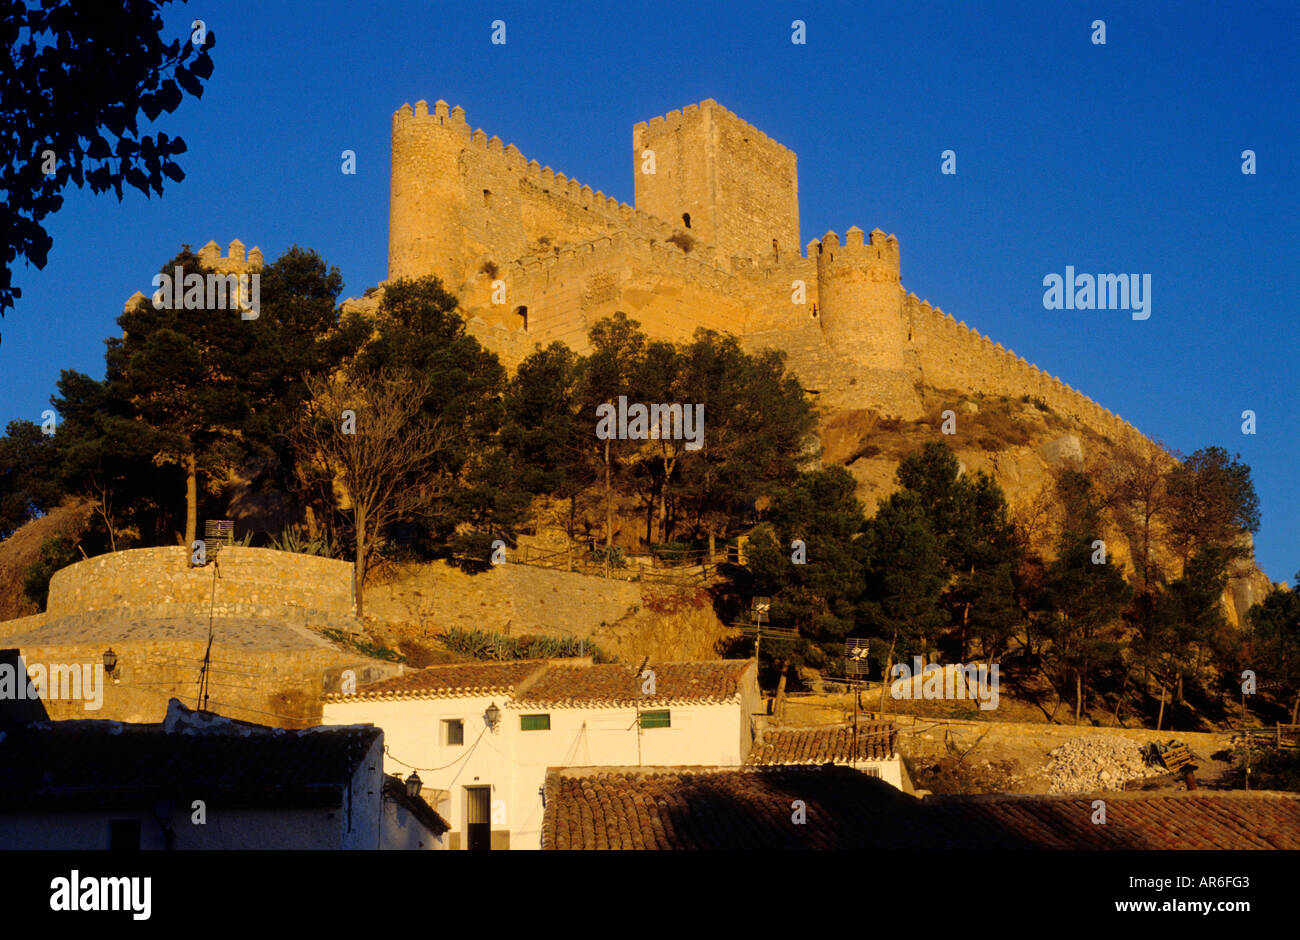 Medieval Castle Almansa Castile La Mancha Albacete Province Spain Stock Photo